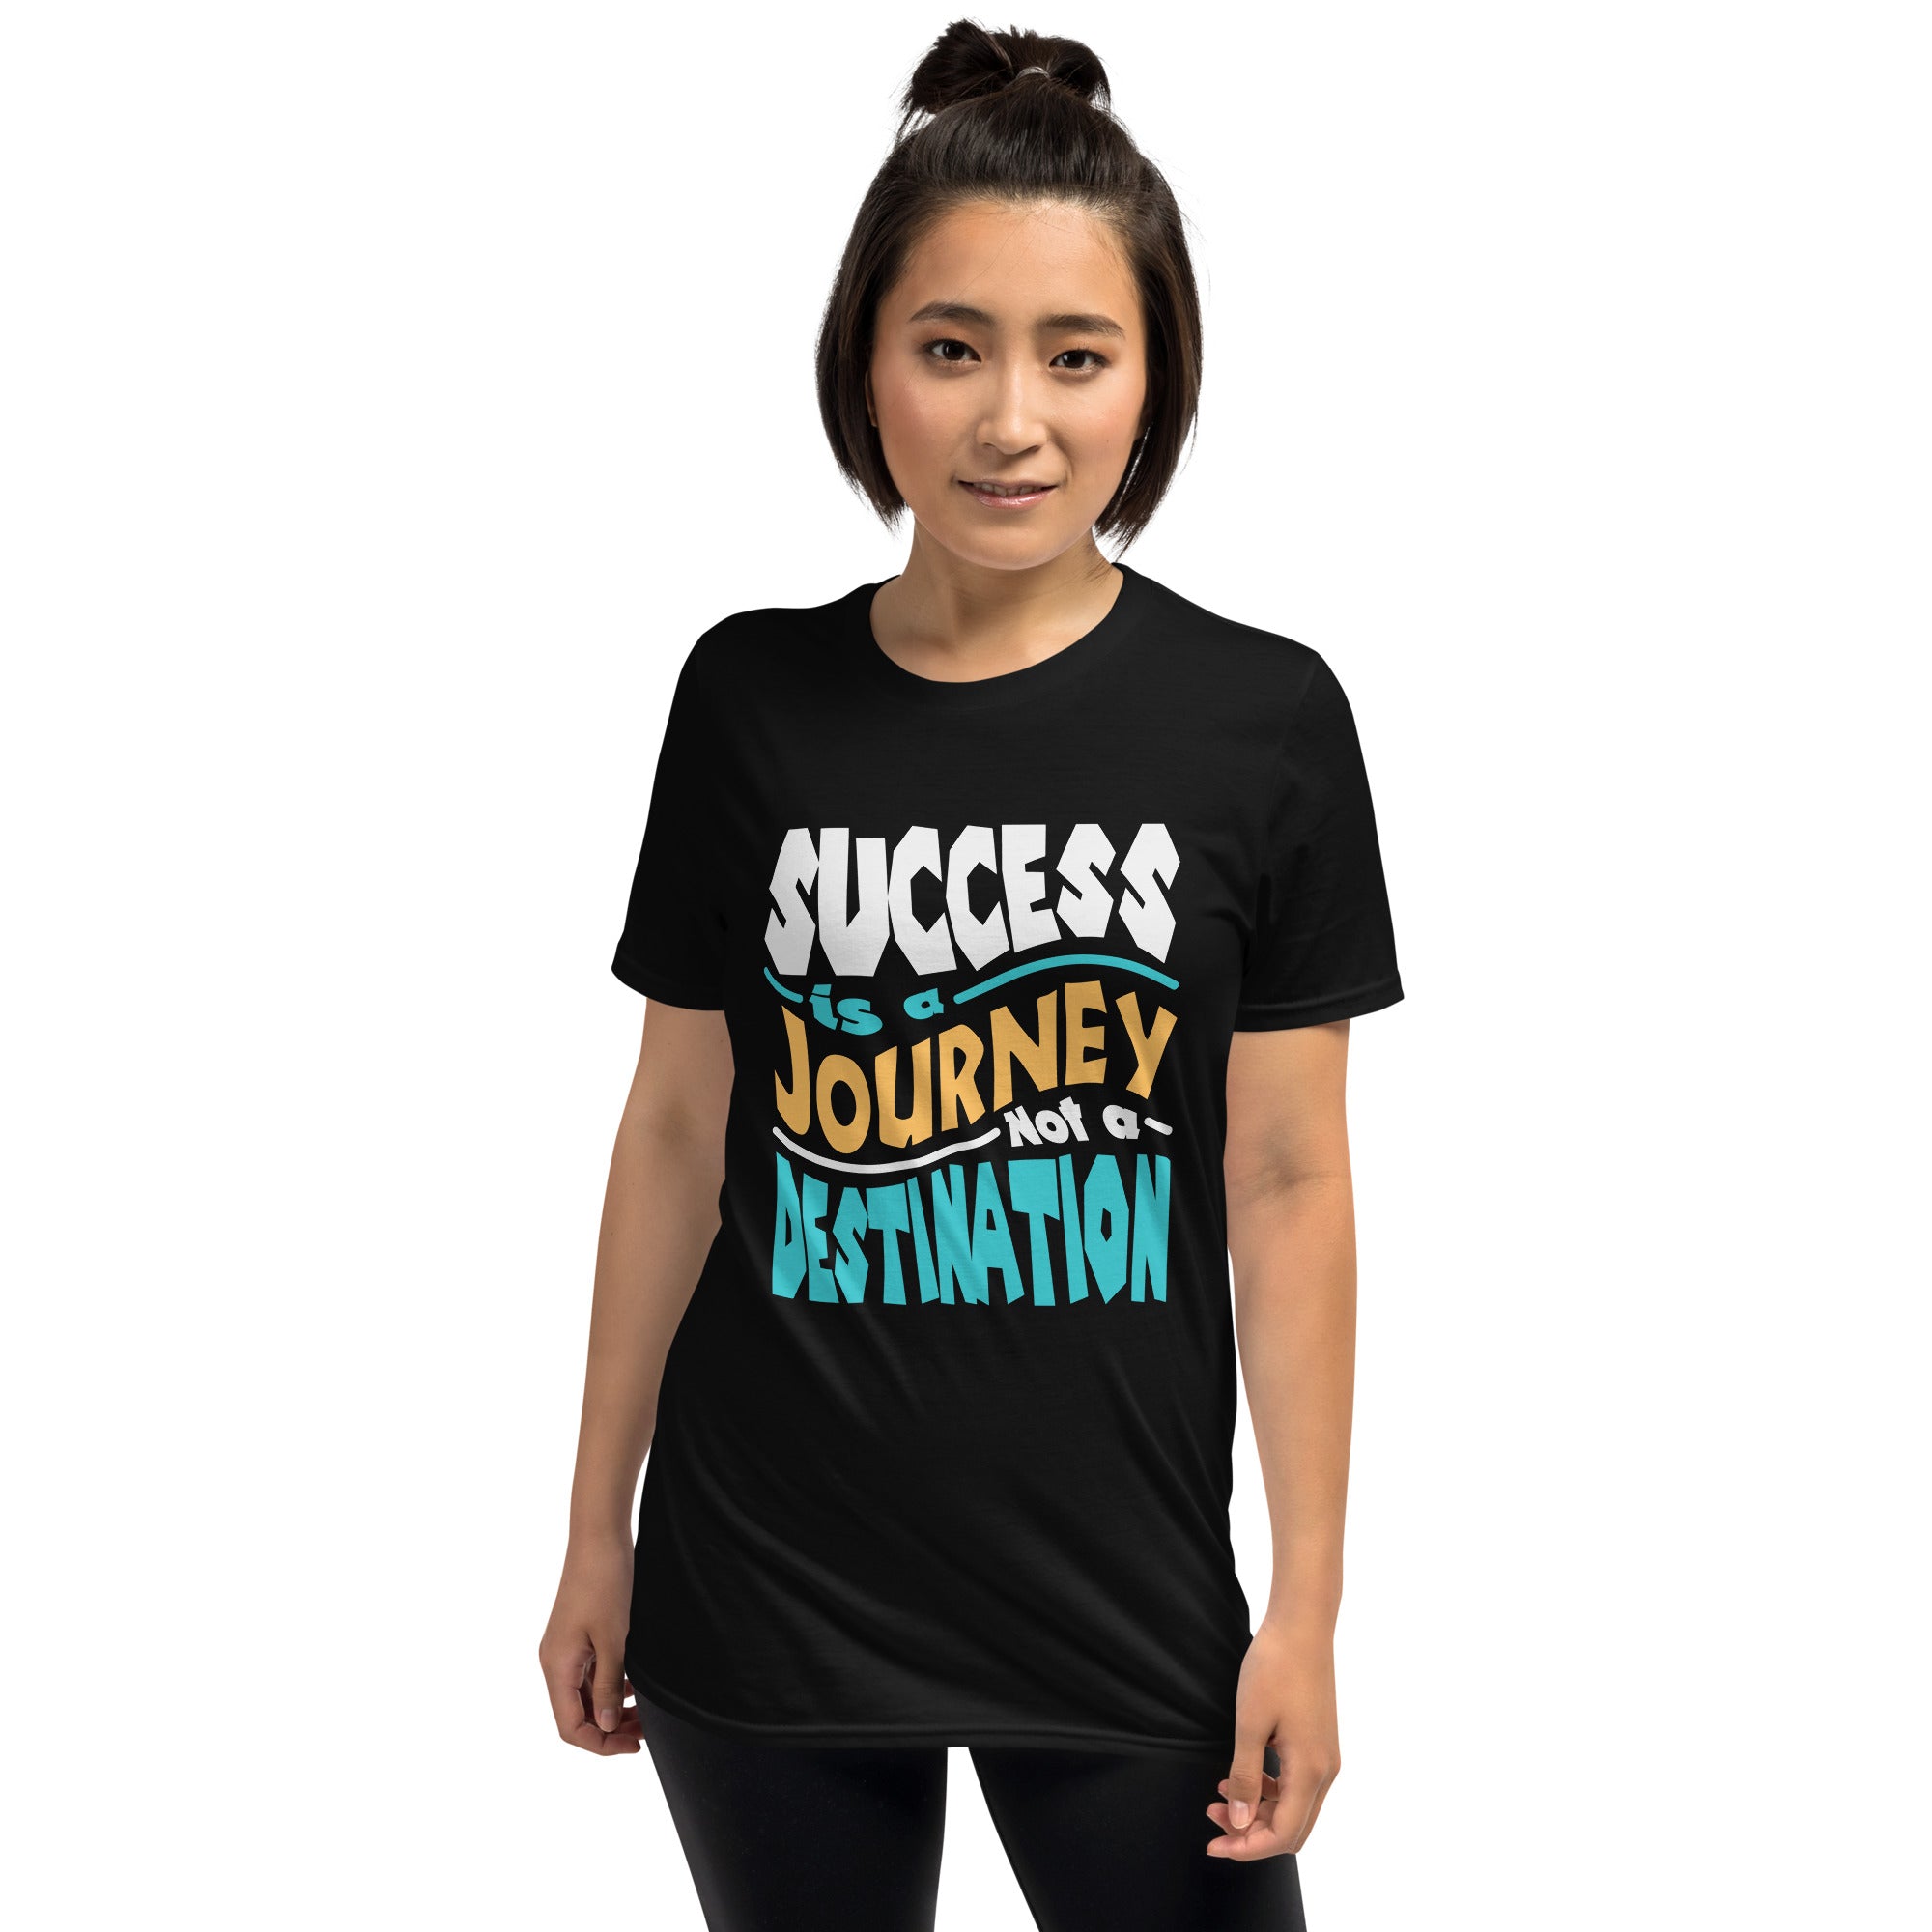 Success is A Journey, Not A Destination - Short-Sleeve Unisex T-Shirt